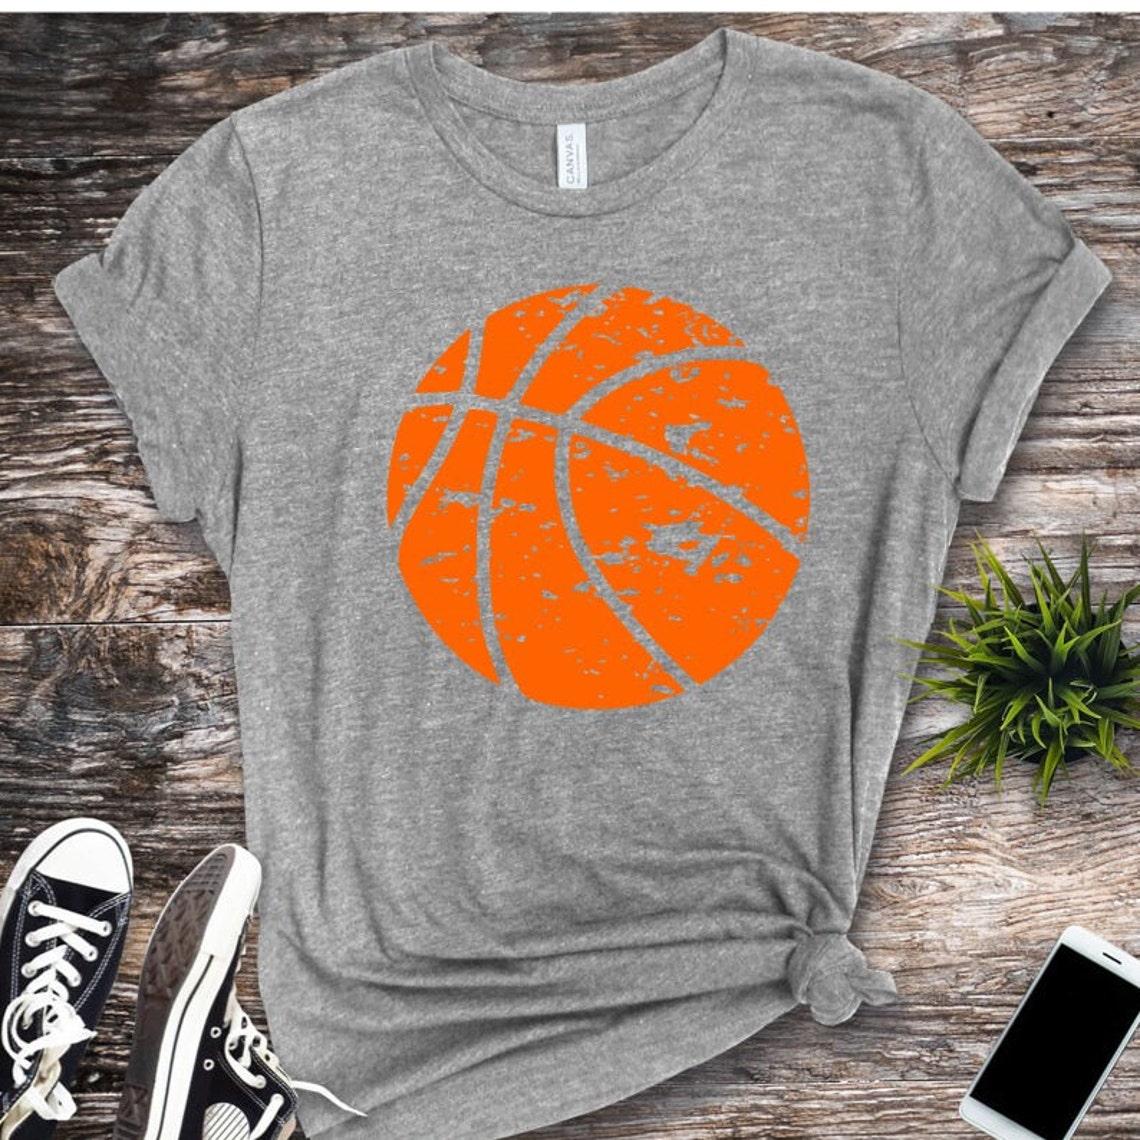 Basketball SVG Basketball Grunge SVG Digital Download Cut - Etsy